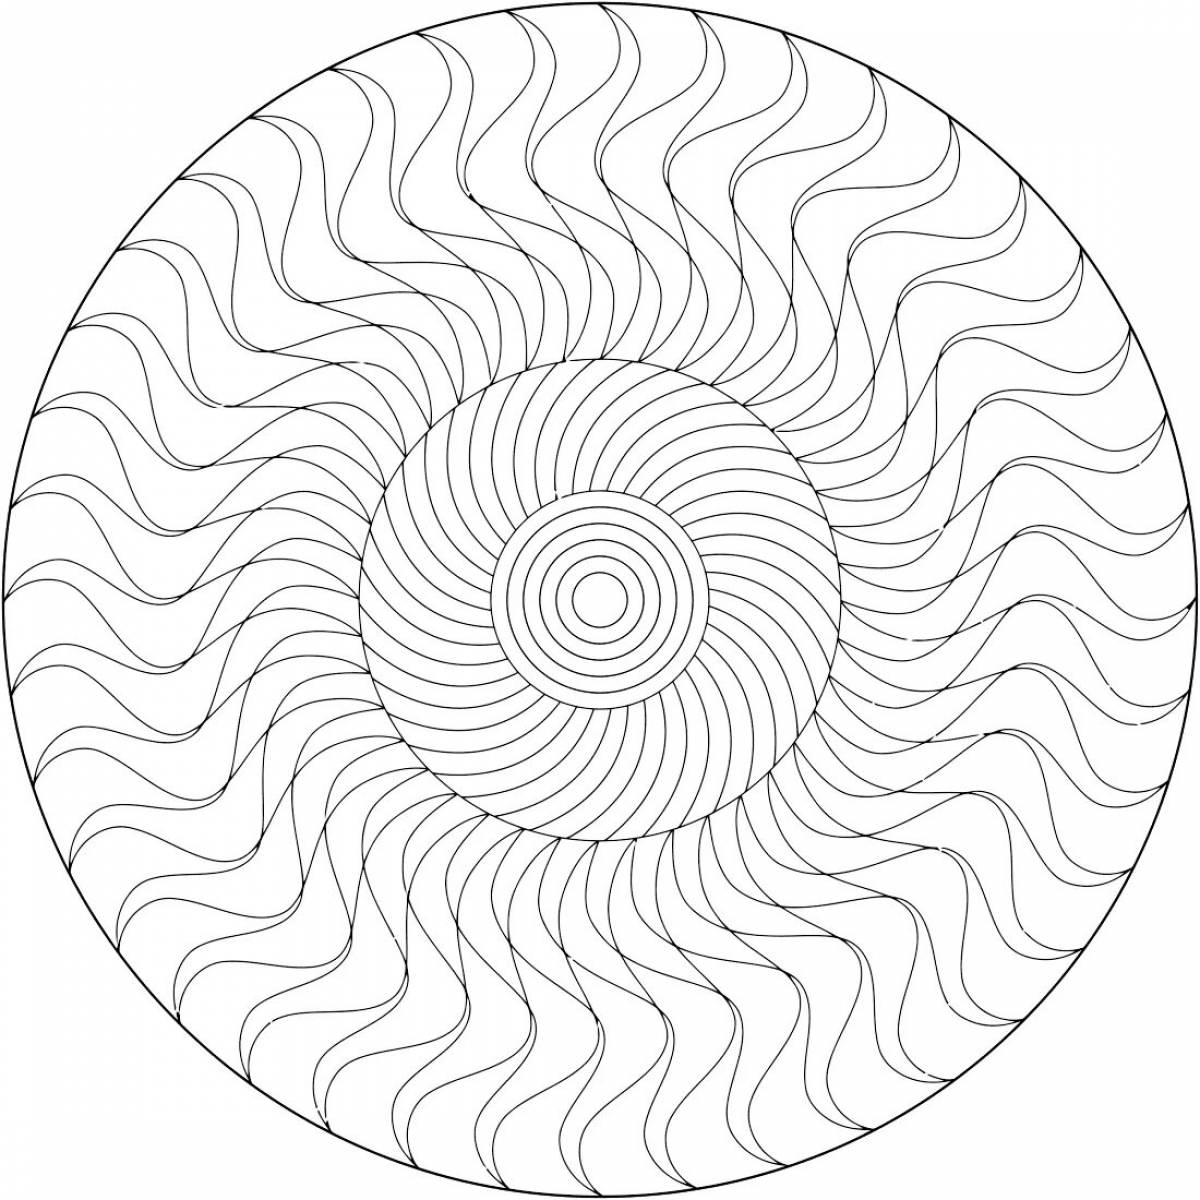 Dramatic circular pattern spiral coloring